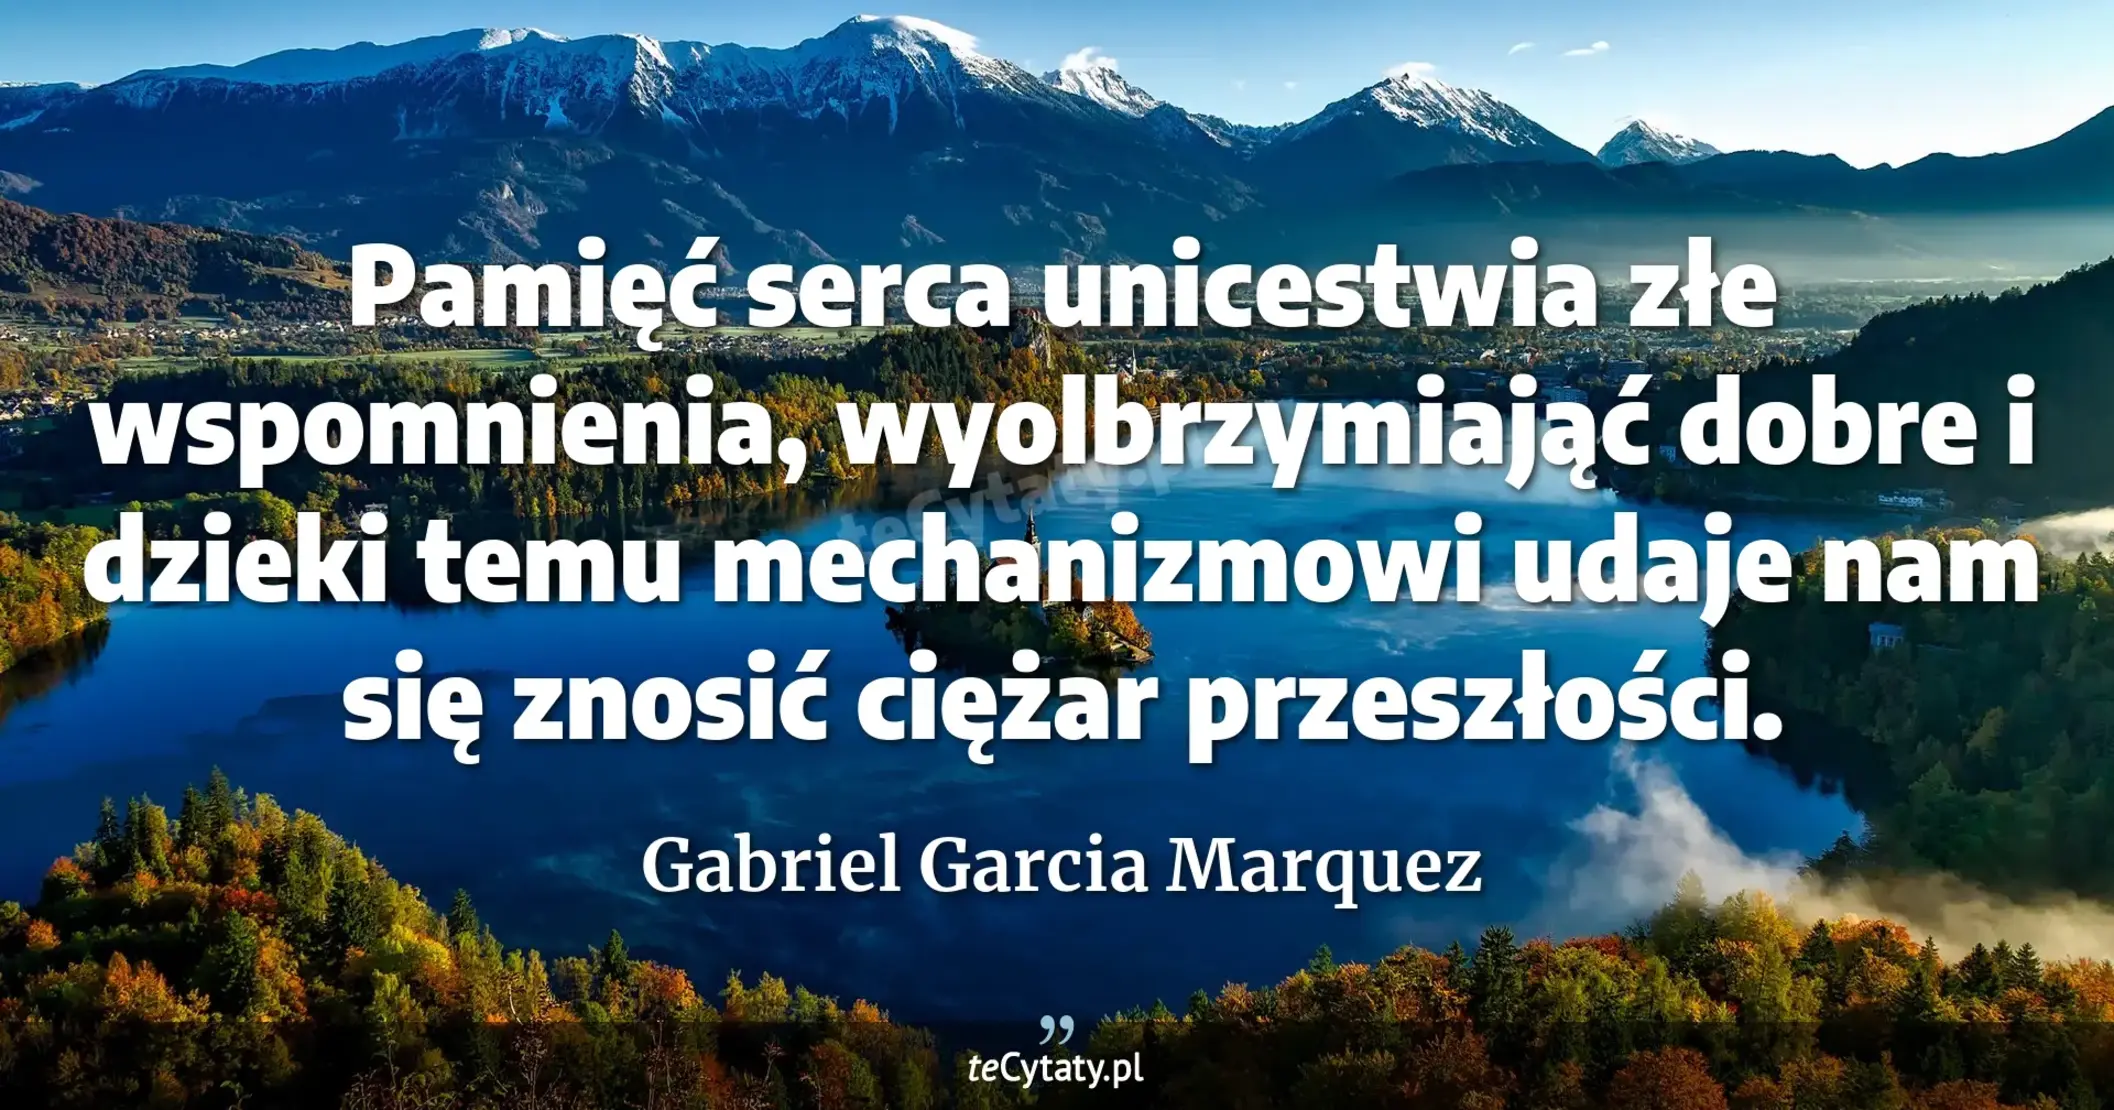 Pamięć serca unicestwia złe wspomnienia, wyolbrzymiająć dobre i dzieki temu mechanizmowi udaje nam się znosić ciężar przeszłości. - Gabriel Garcia Marquez